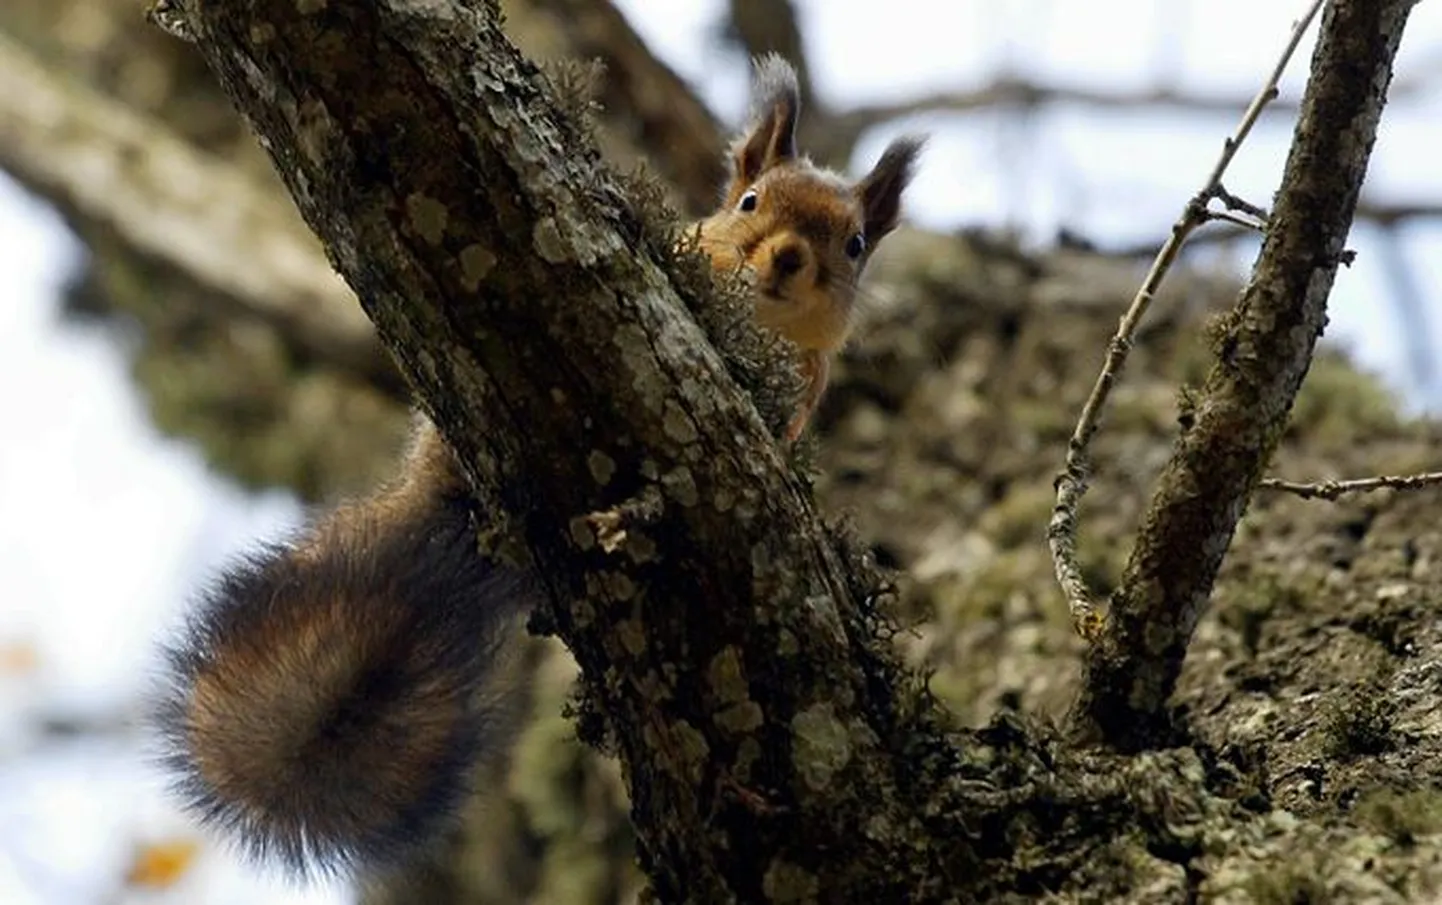 Orav liigub puult puule väga vilkalt, praegu on tal käsil talvevarude kogumine, mille ta peidab pessa või sambla alla.